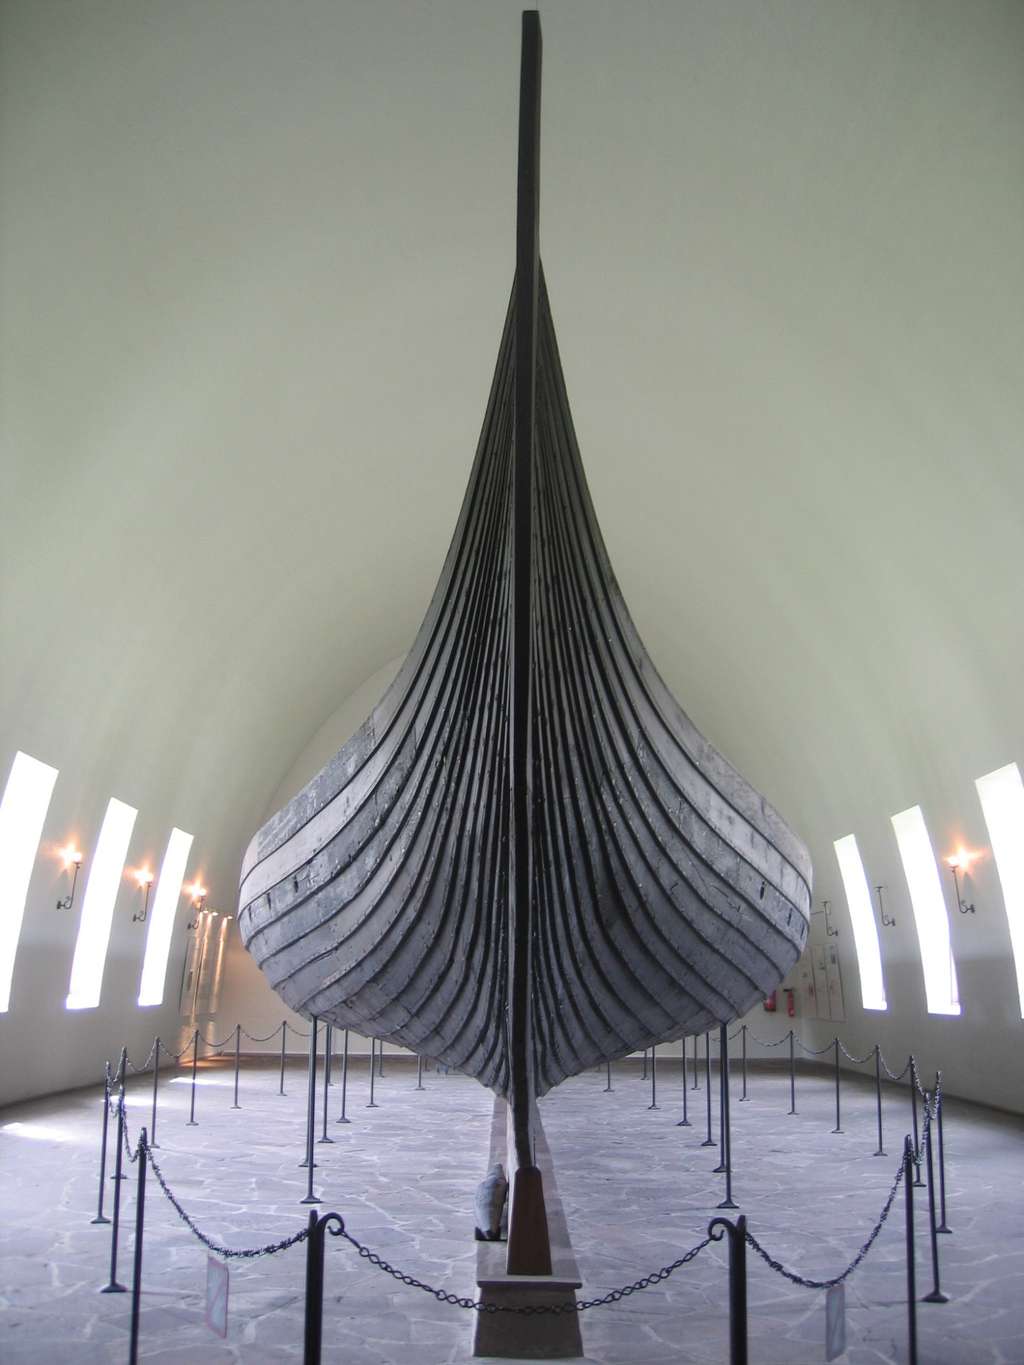 Bateau viking de Gokstad, "langskip", (23,50 m de long, 5,20 m de large, 32 rameurs), fin IXe siècle. Musée des bateaux vikings d'Oslo, Norvège. © Wikimedia Commons, domaine public.